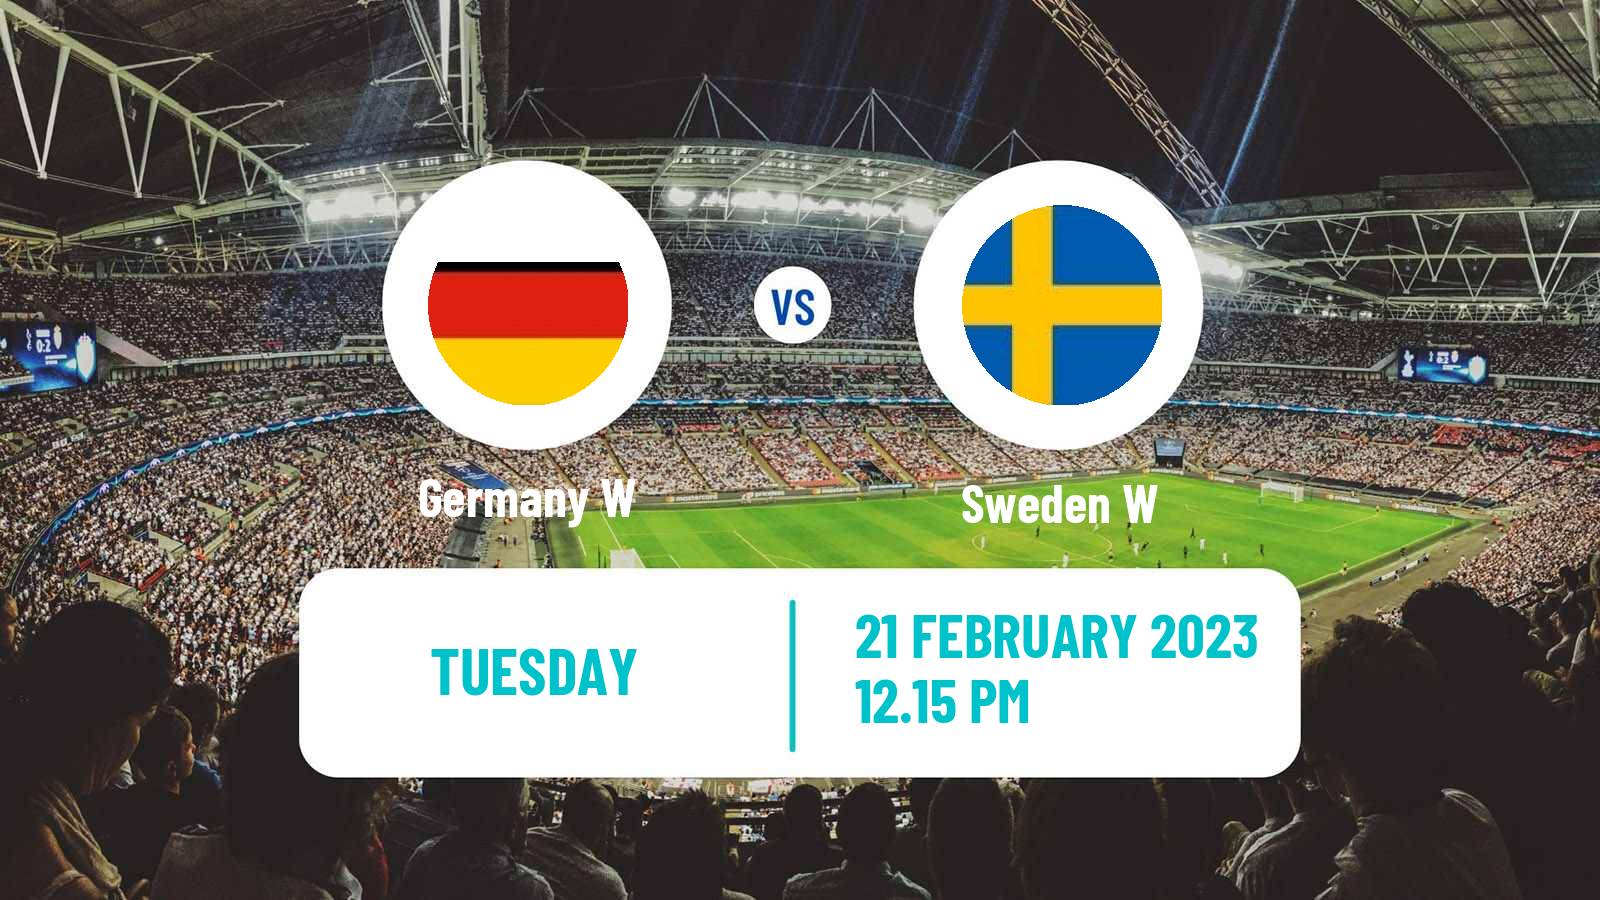 Soccer Friendly International Women Germany W - Sweden W